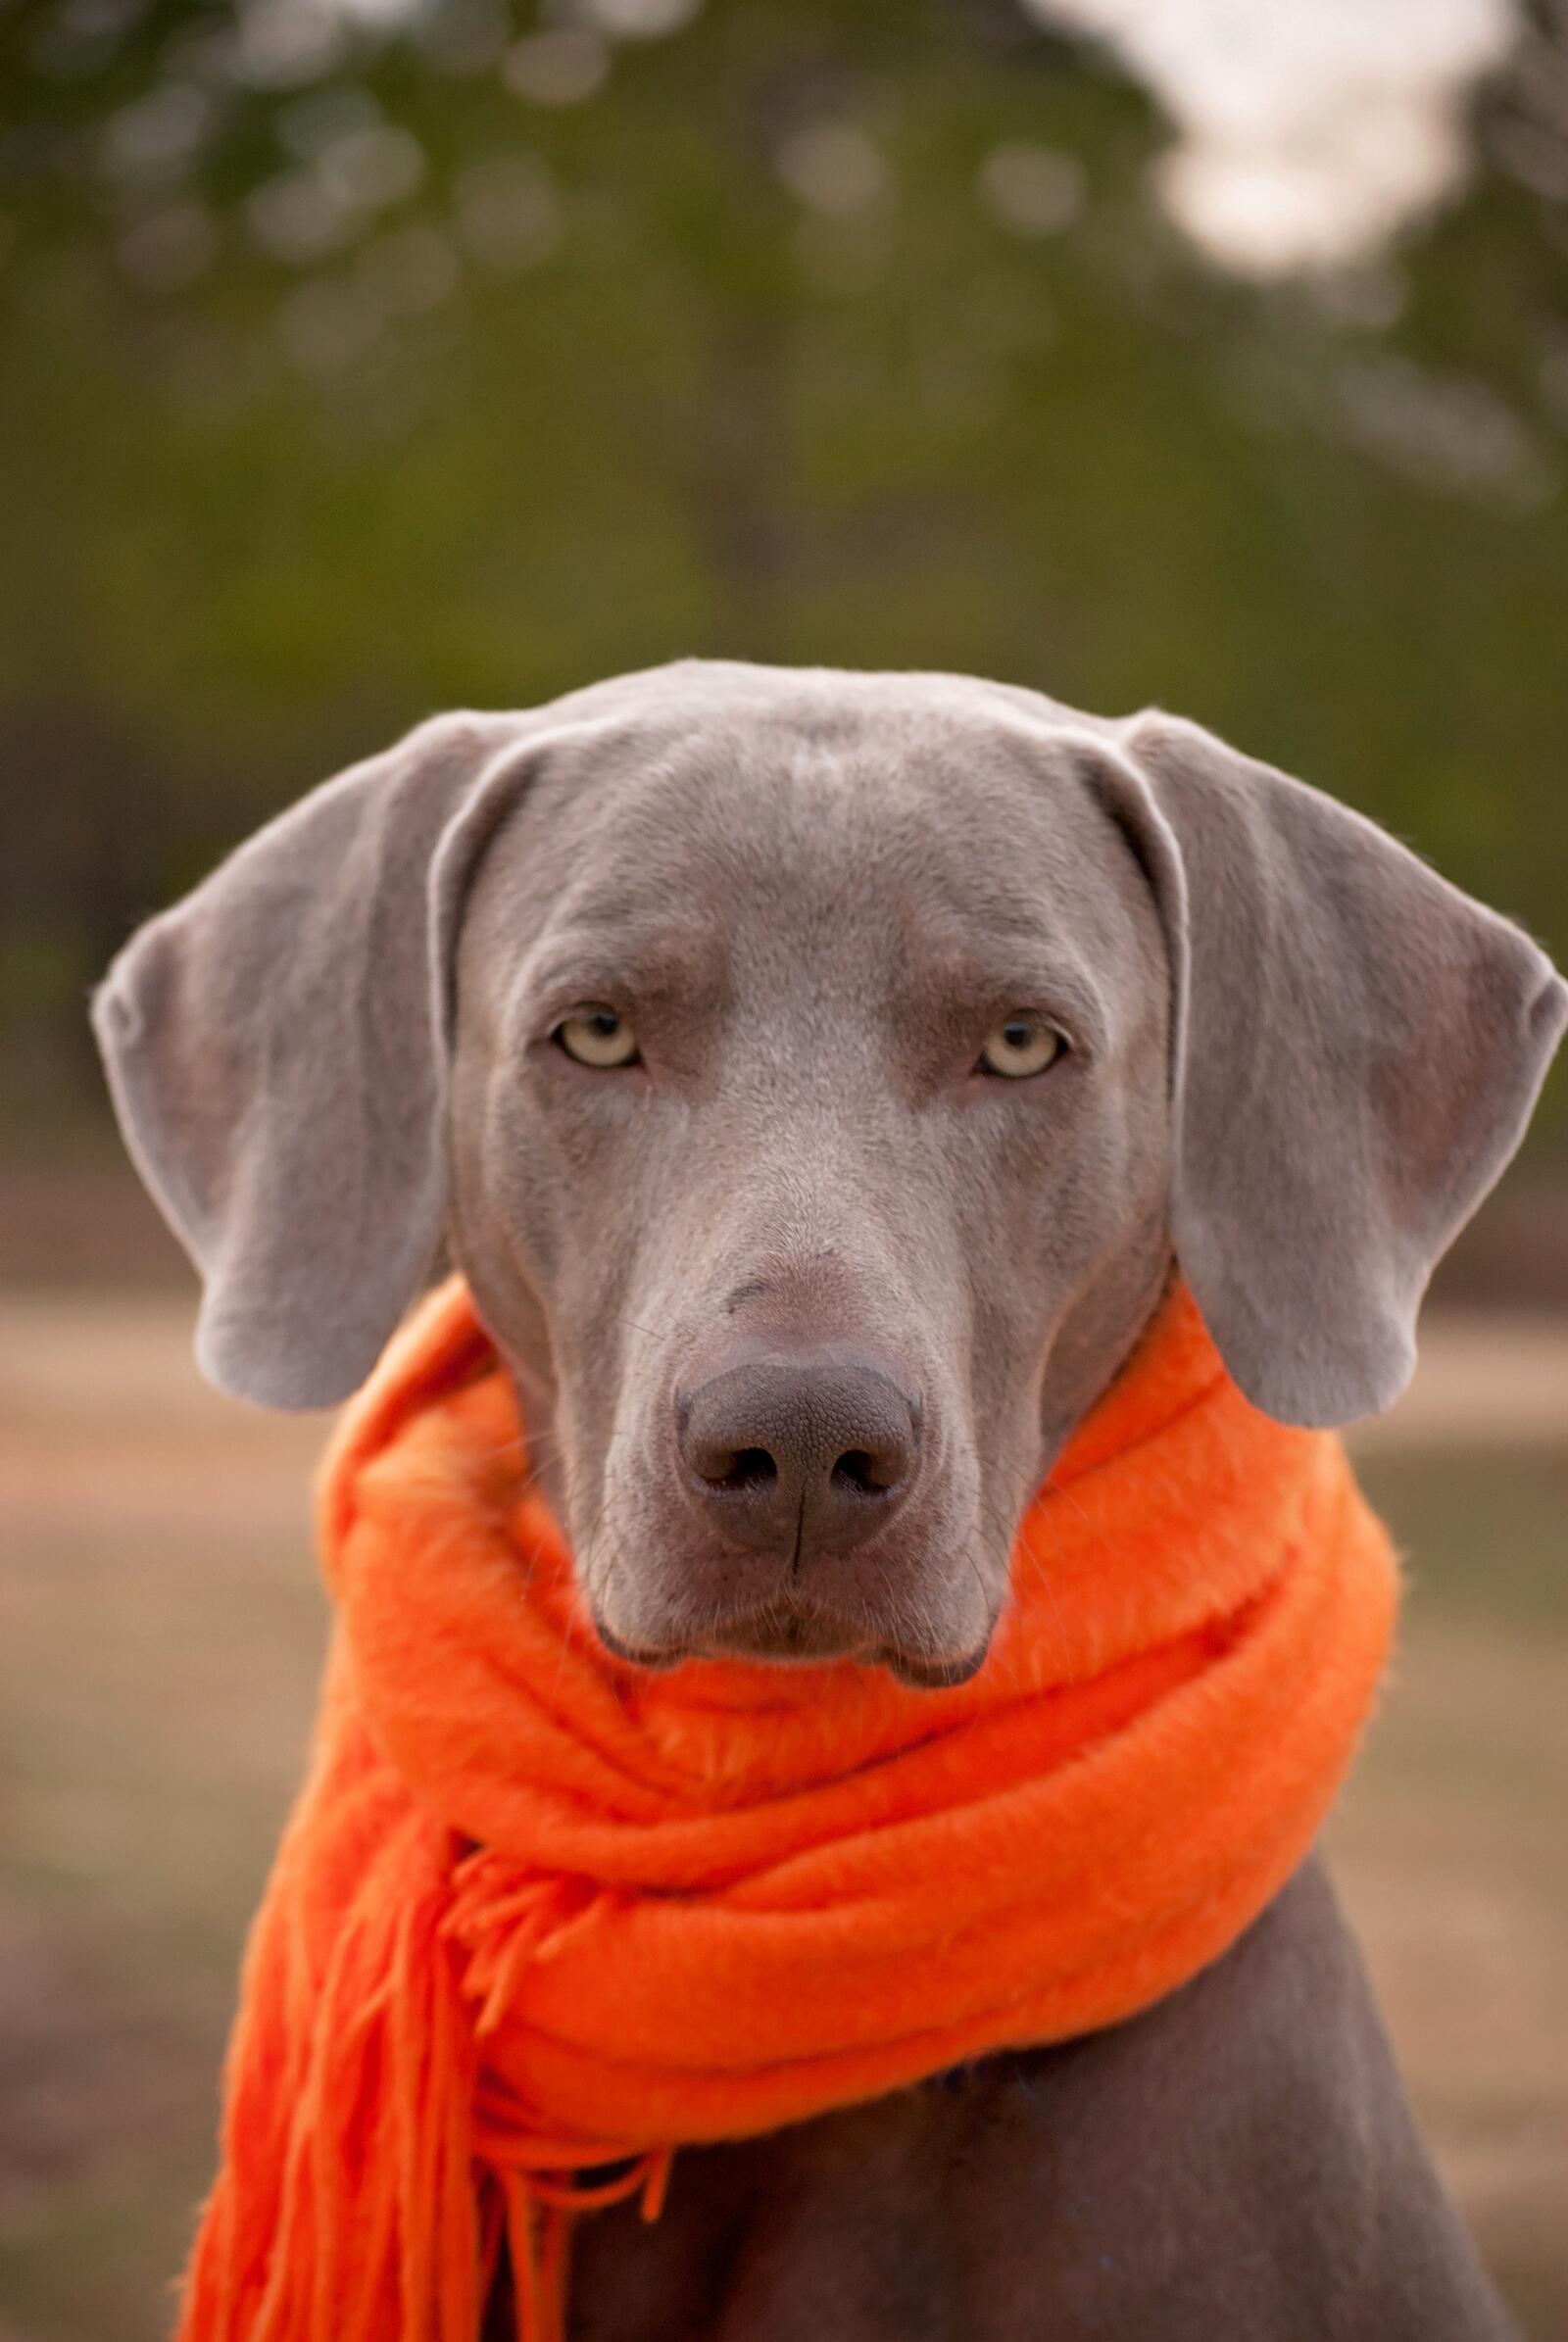 Вислоухая собака в оранжевом шарфе